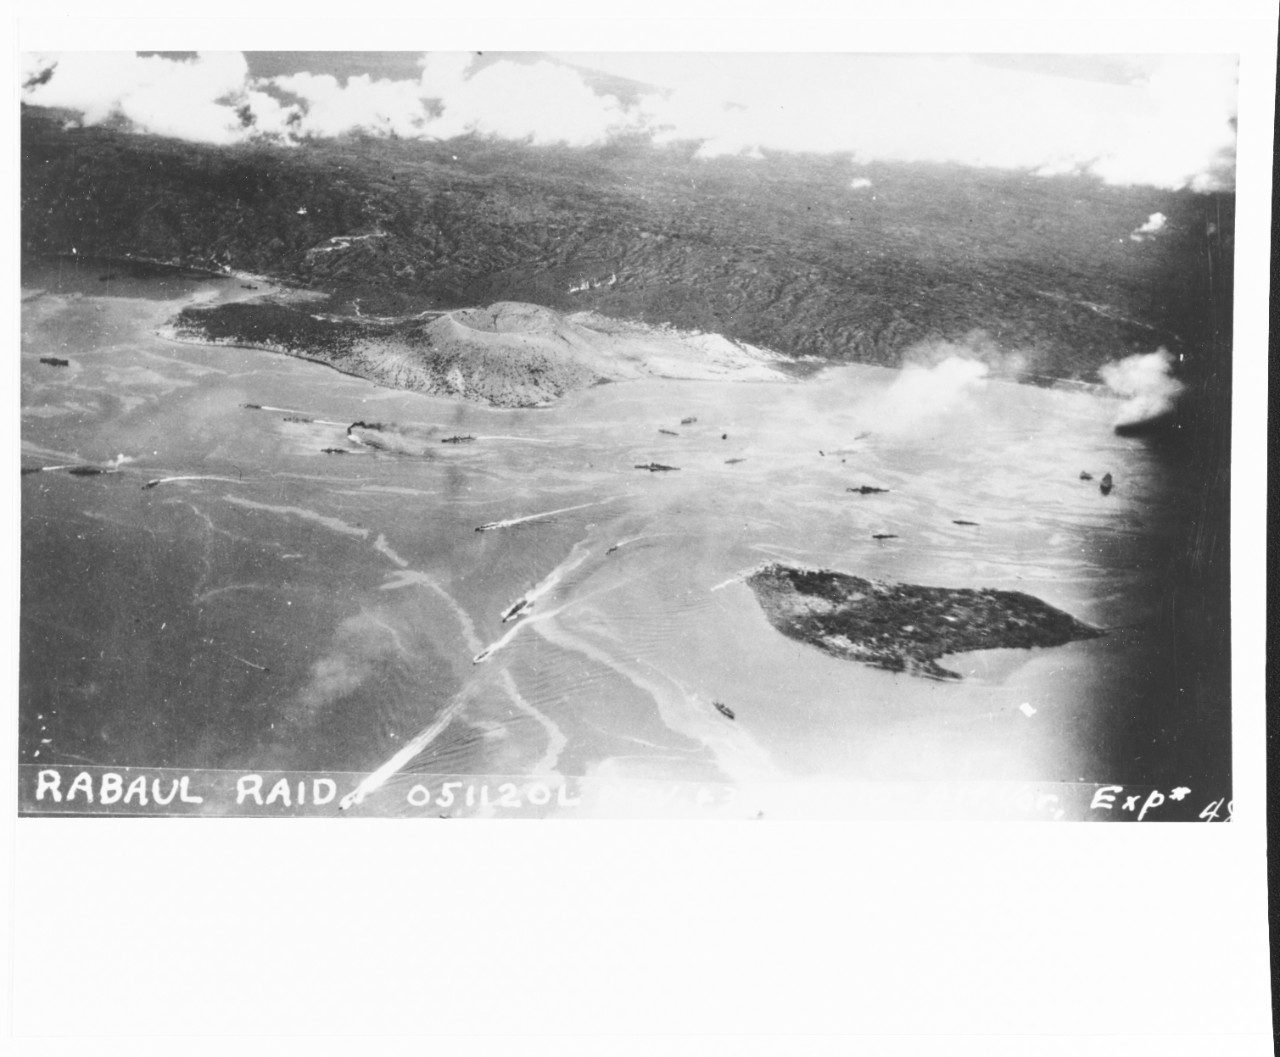 Carrier strike on Rabaul, 5 November 1943